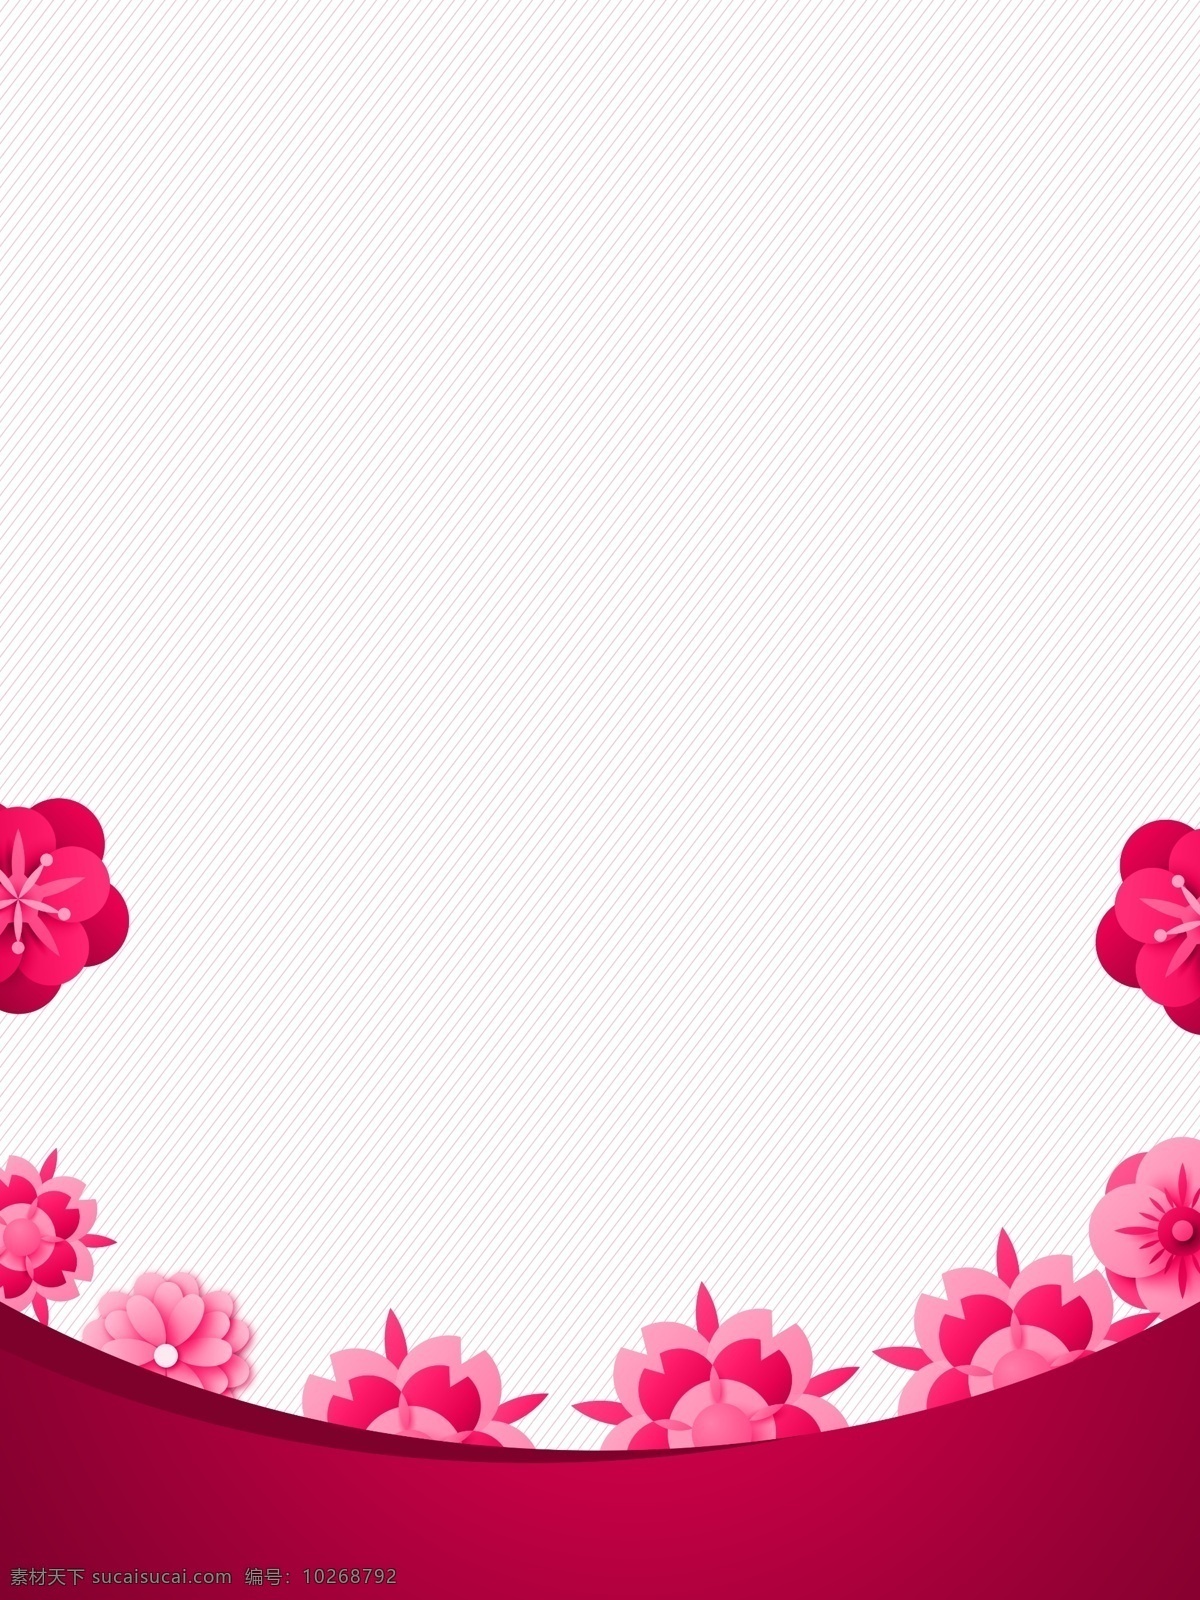 2019 情人节 浪漫 背景 粉色背景 白色 节日背景 为爱表白 梦幻背景 浪漫背景 花朵背景